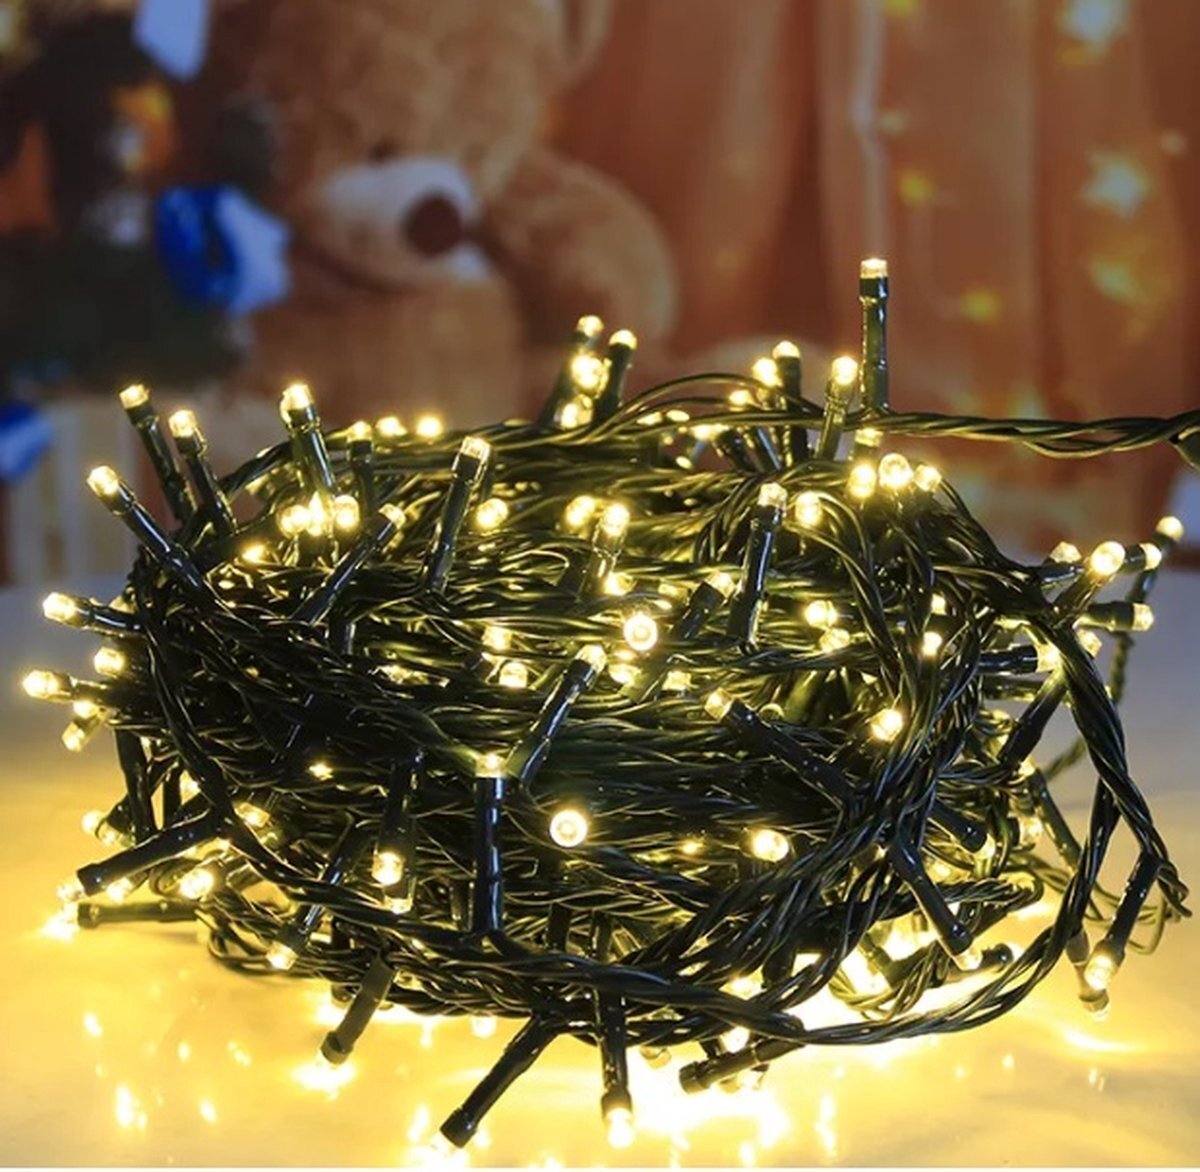 RNA Lightning & Decoration Kerstverlichting - Voor Binnen en Buiten - Kerst - 50 Meter - 1000 LED lampjes - Warm Wit - Kerstboom - Kerstverlichting Buiten